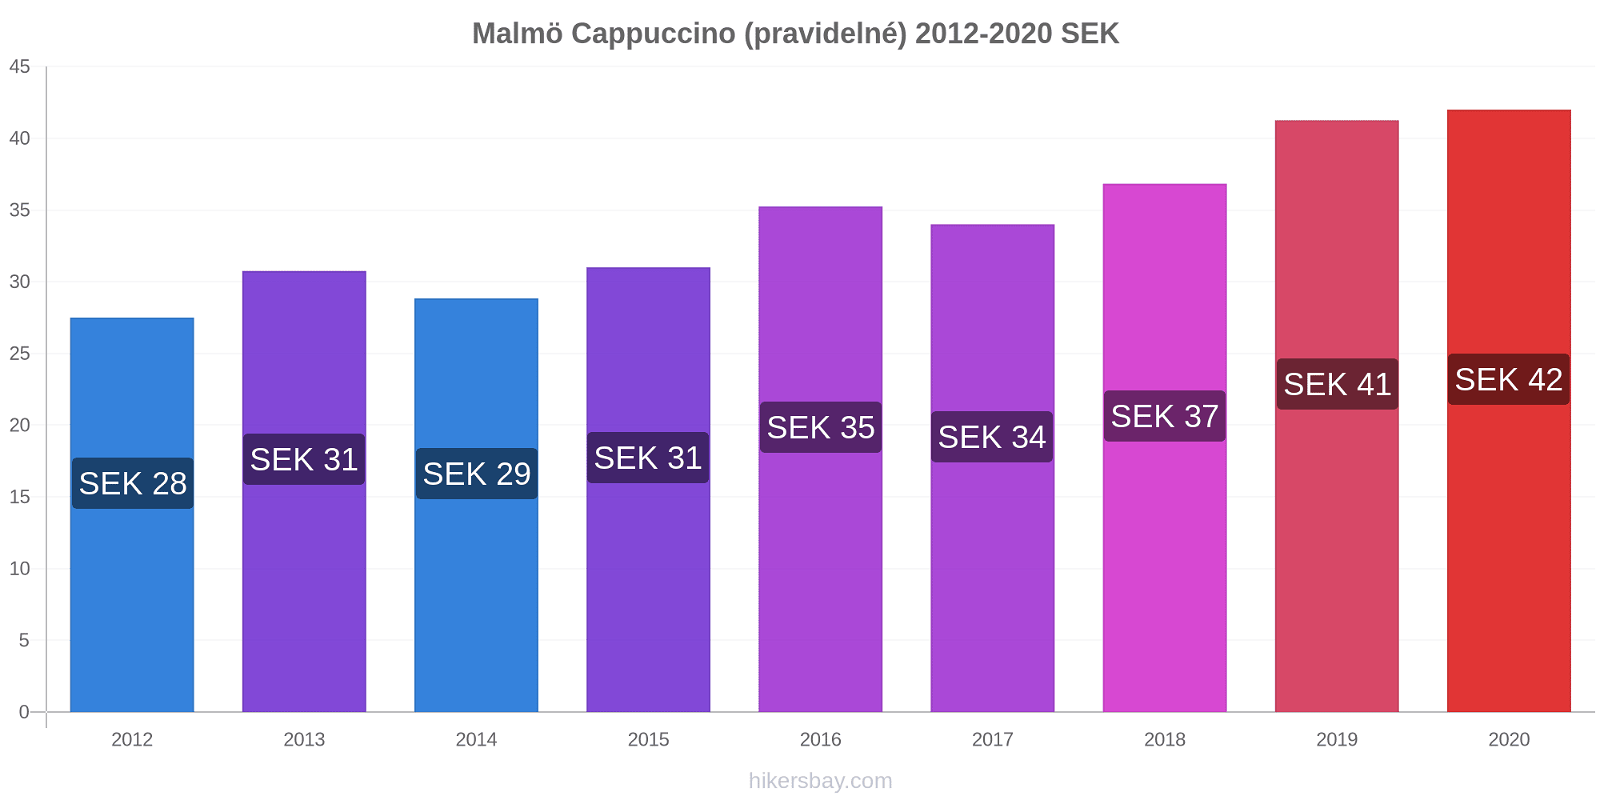 Malmö změny cen Cappuccino (pravidelné) hikersbay.com